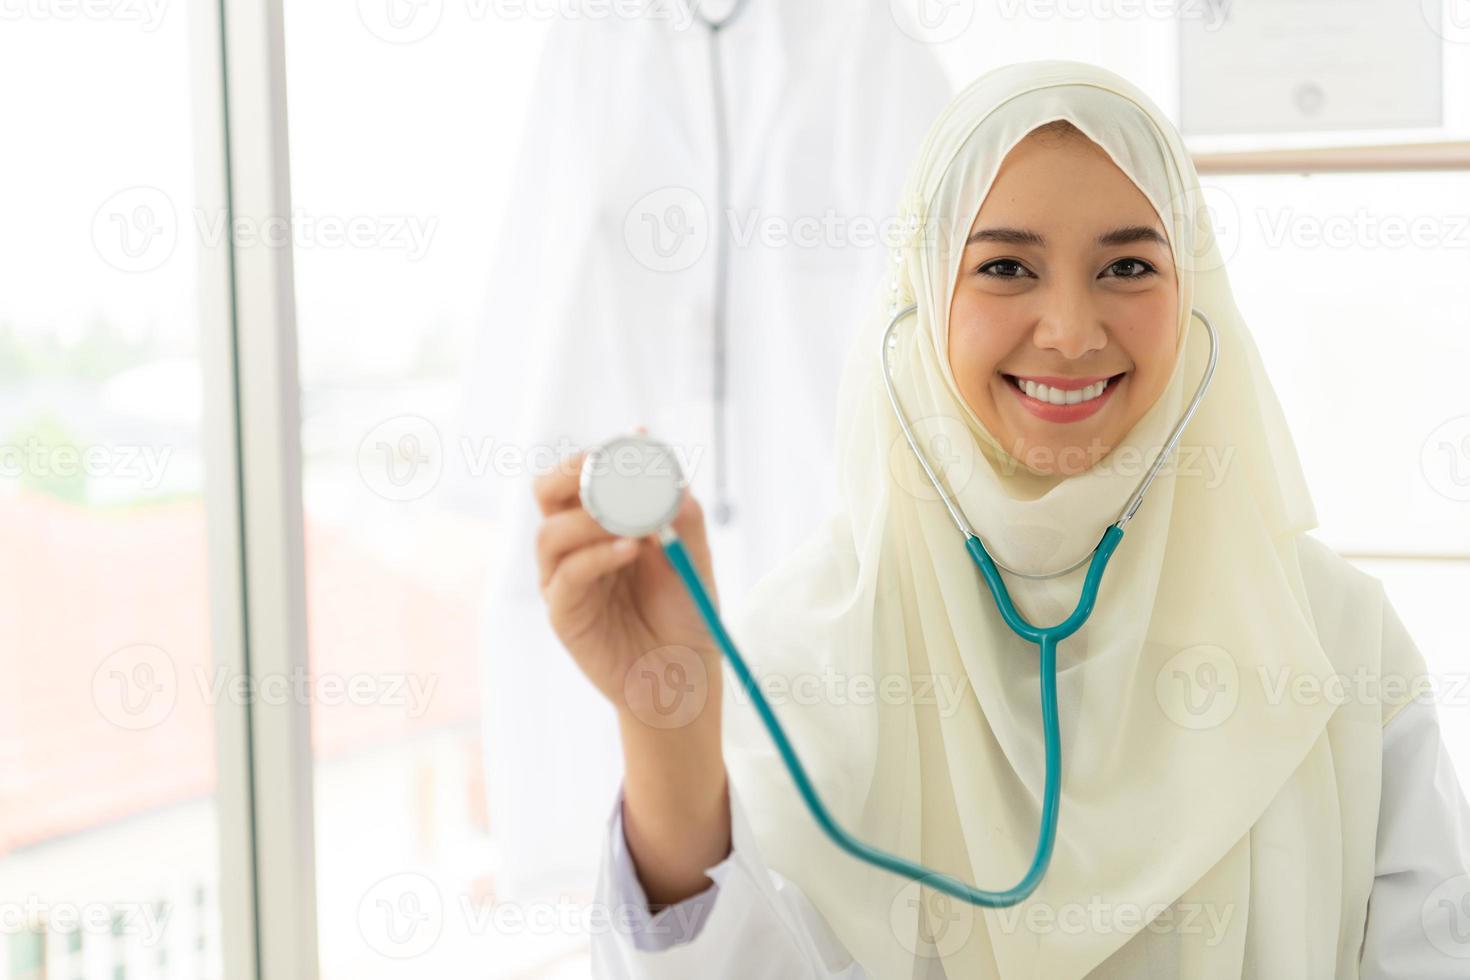 médicos muçulmanos estavam sorrindo e felizes em fornecer serviços médicos foto